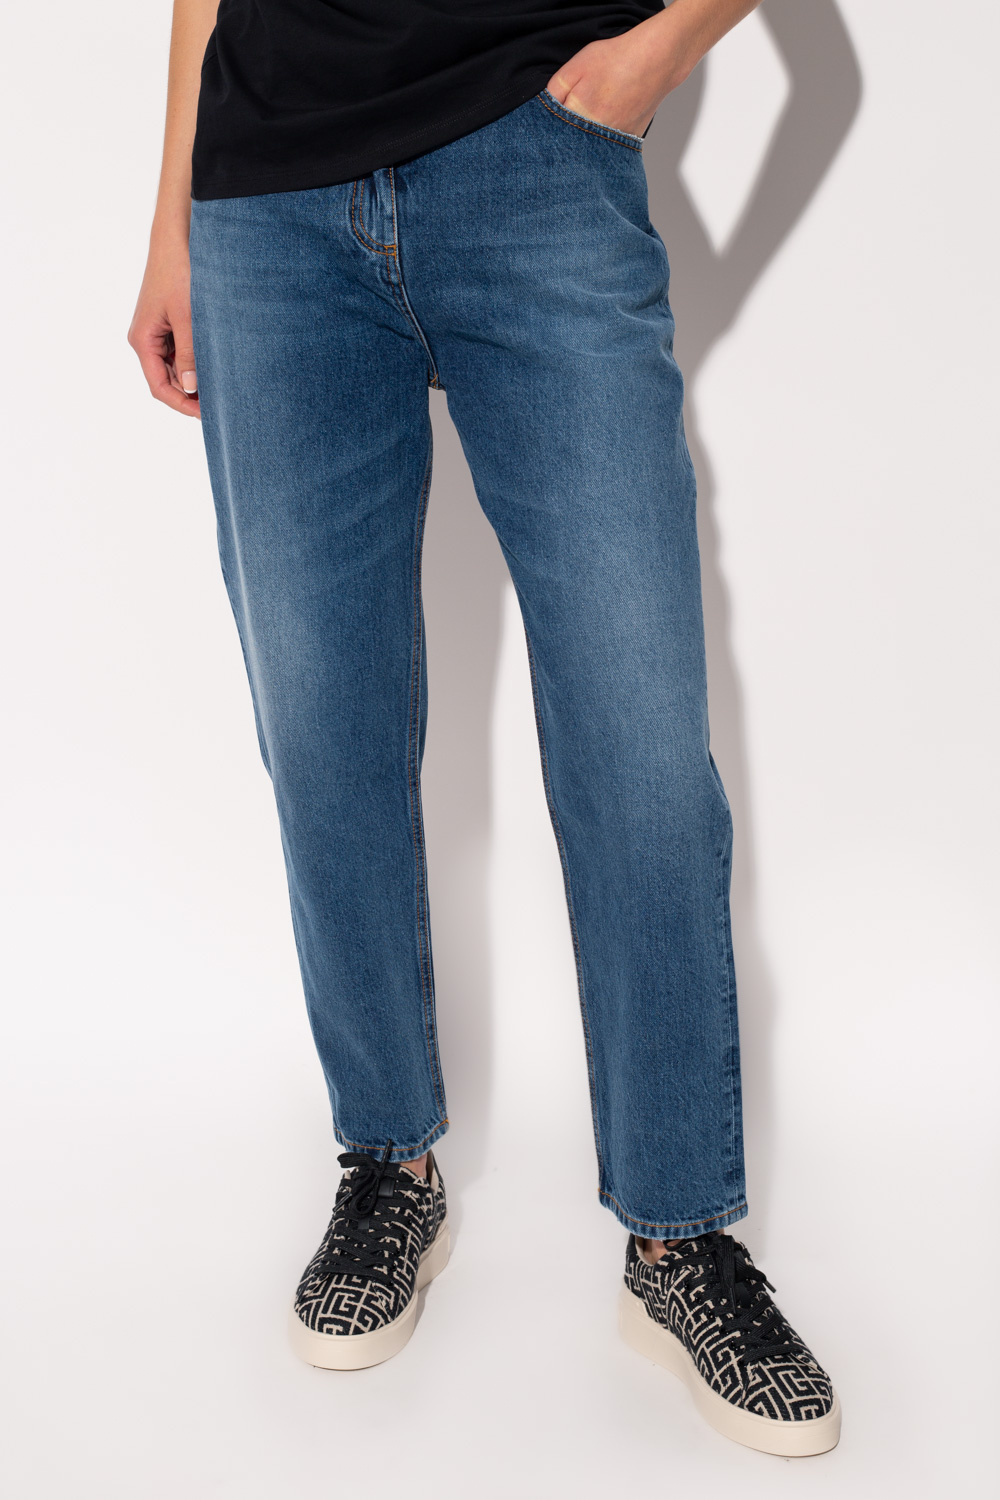 balmain amp High-waisted jeans